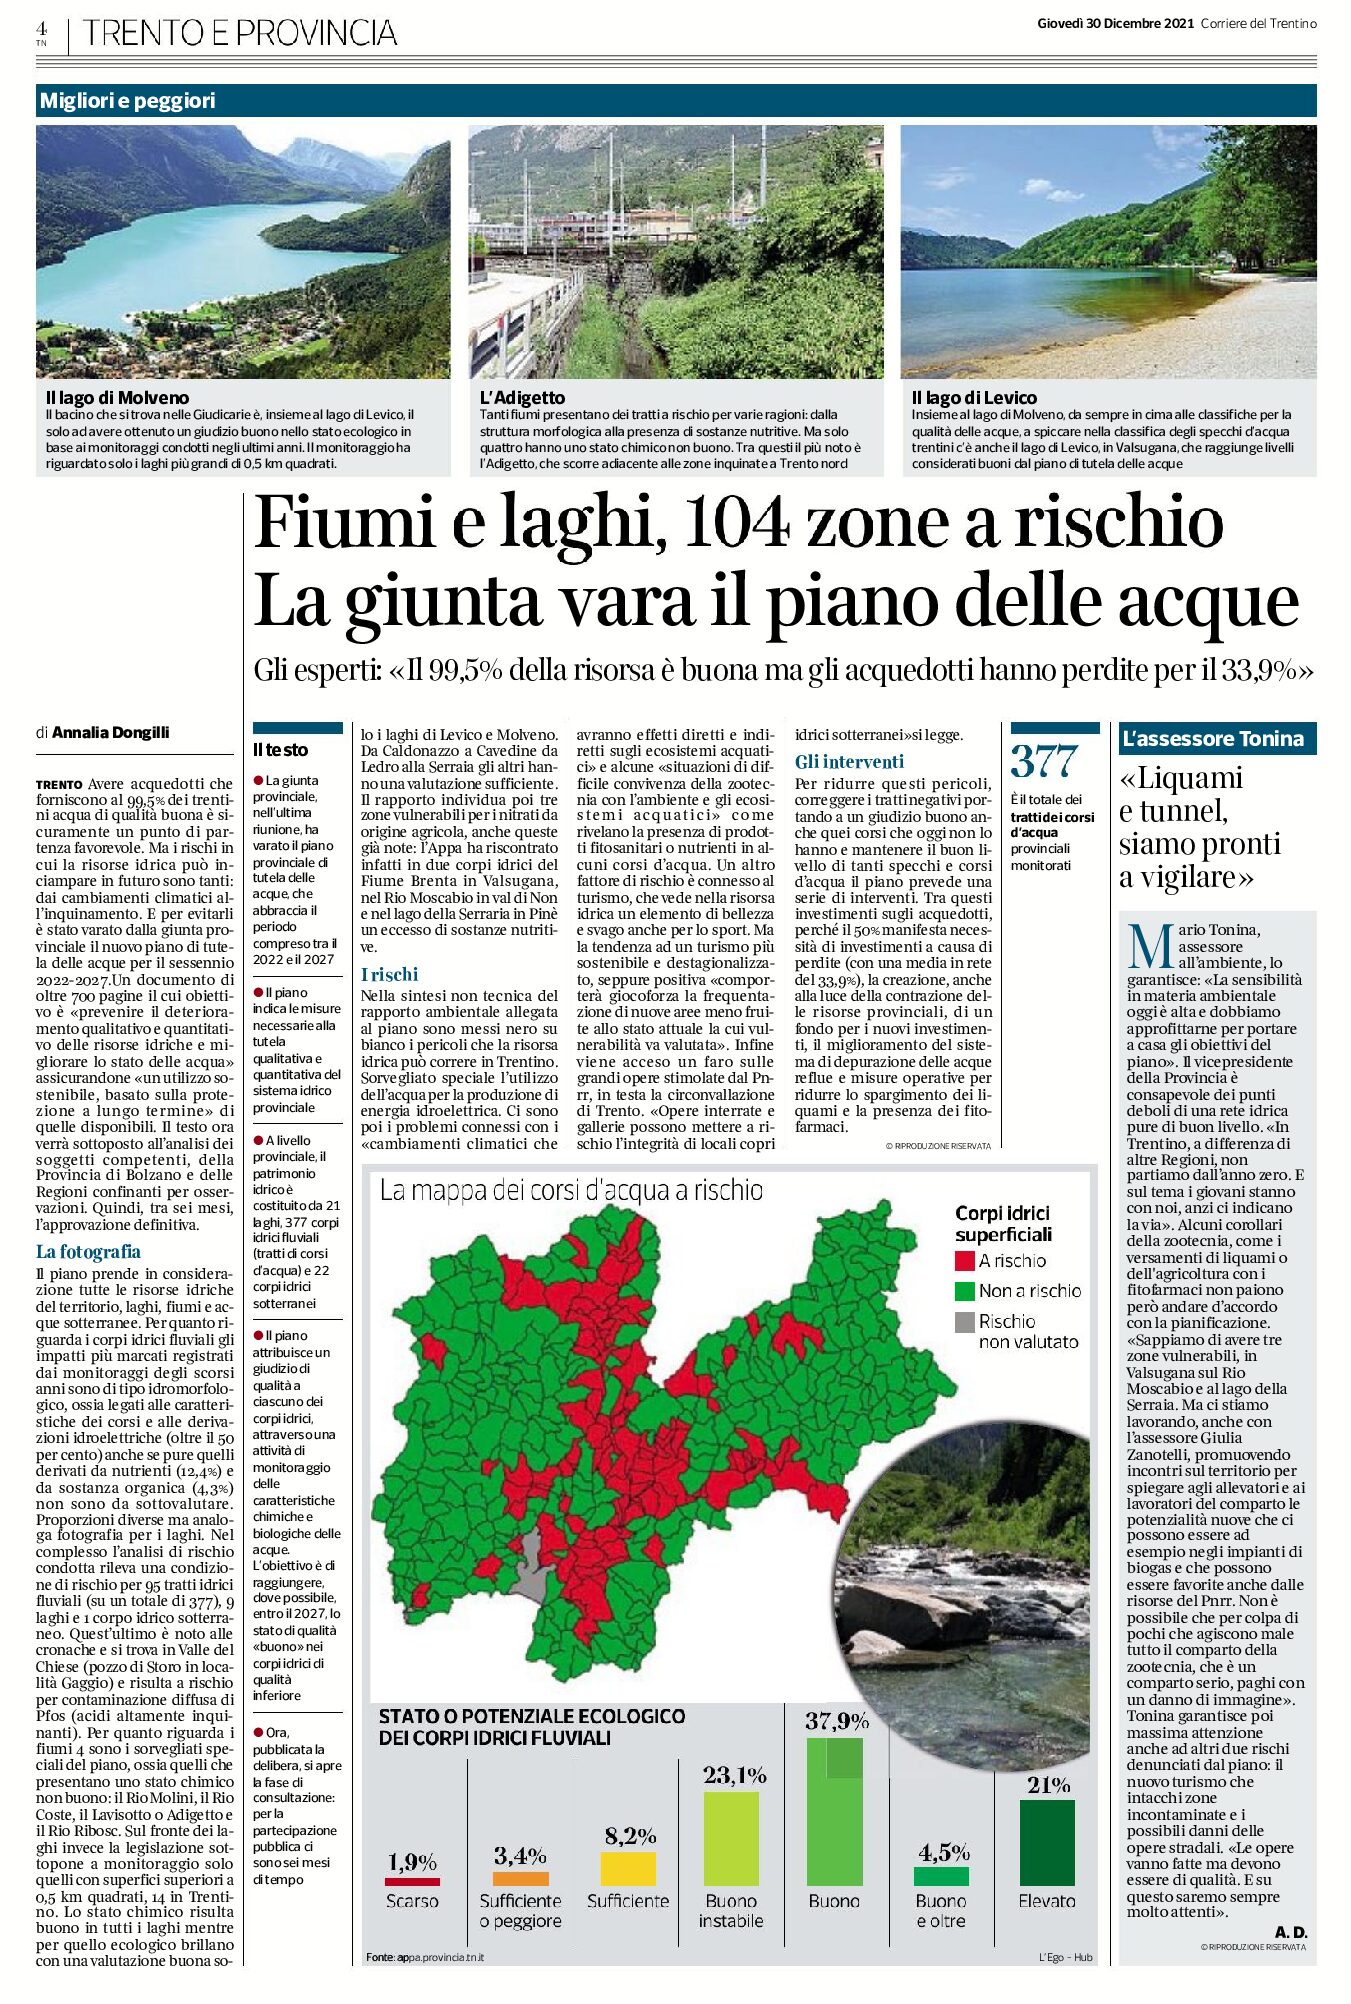 Fiumi e laghi del Trentino: 104 zone a rischio. La giunta vara il piano delle acque